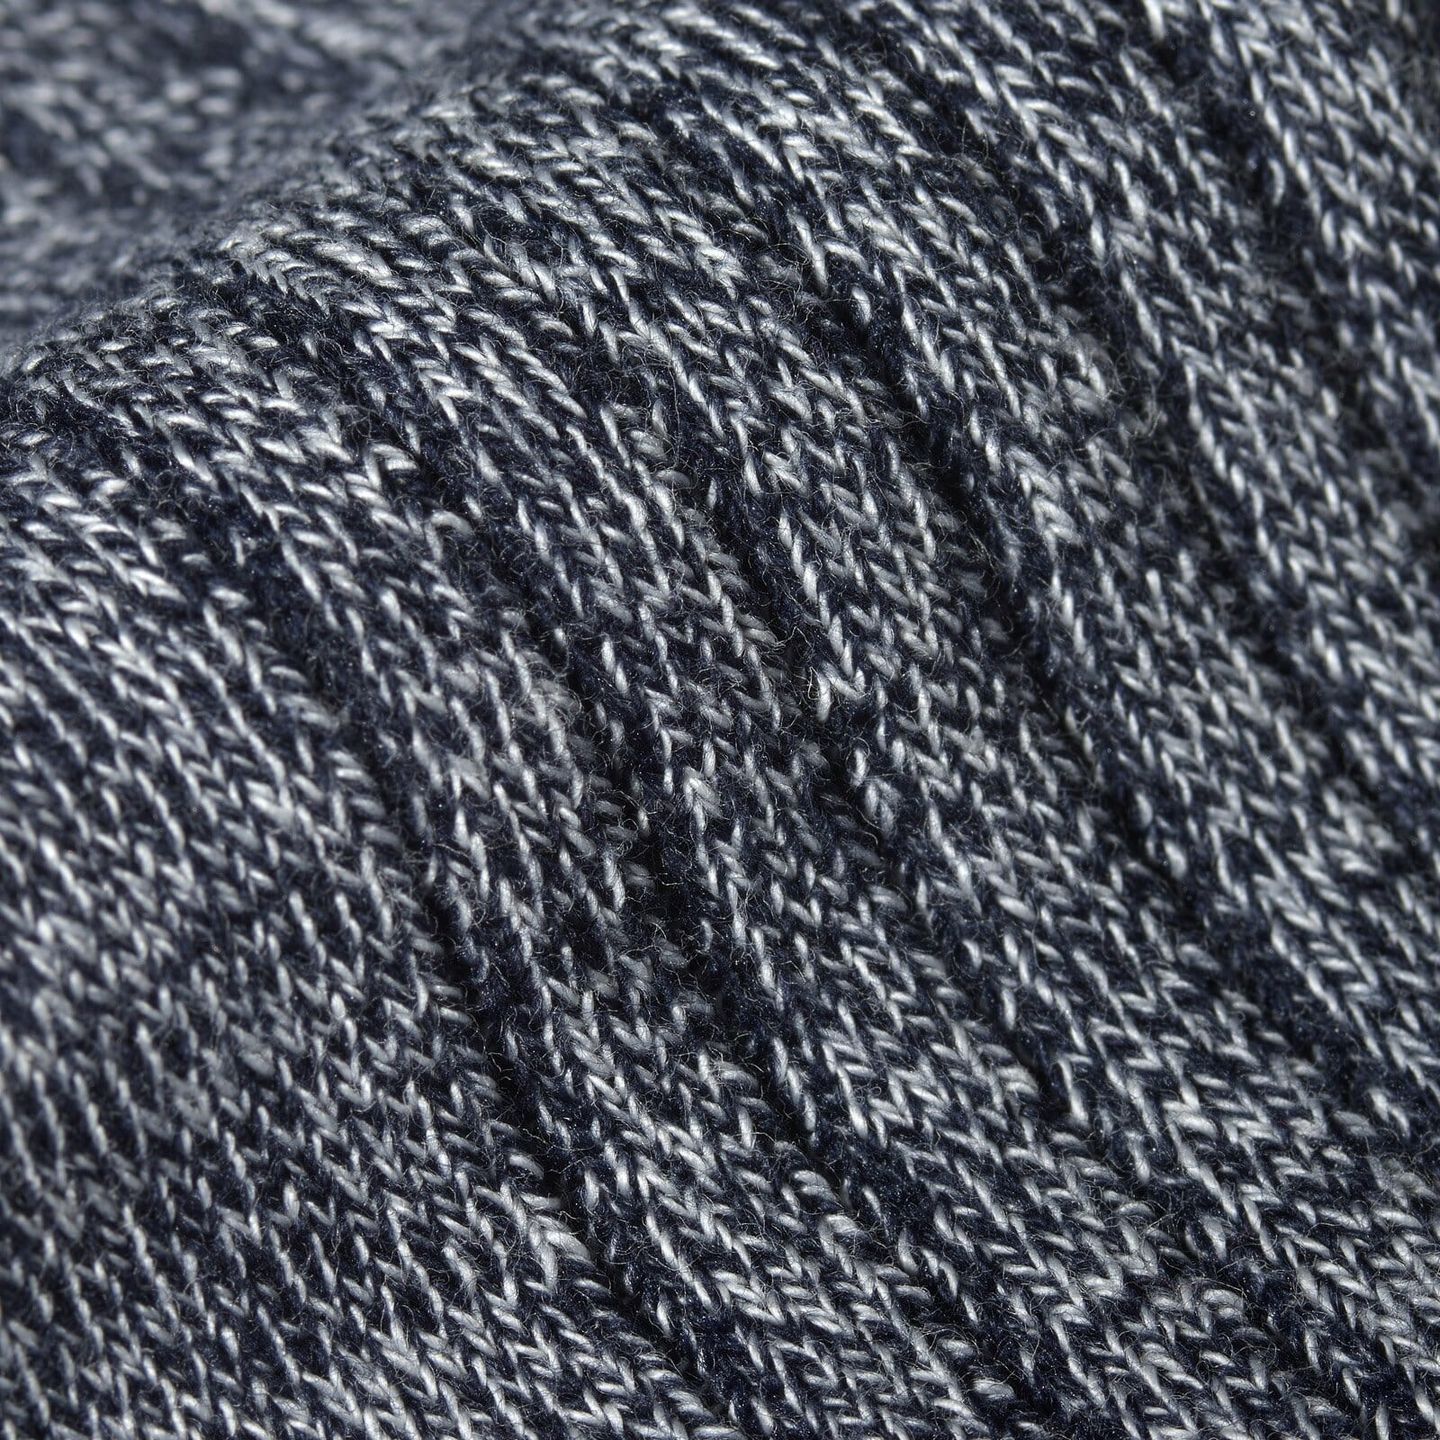 A close up of a marl grey sock